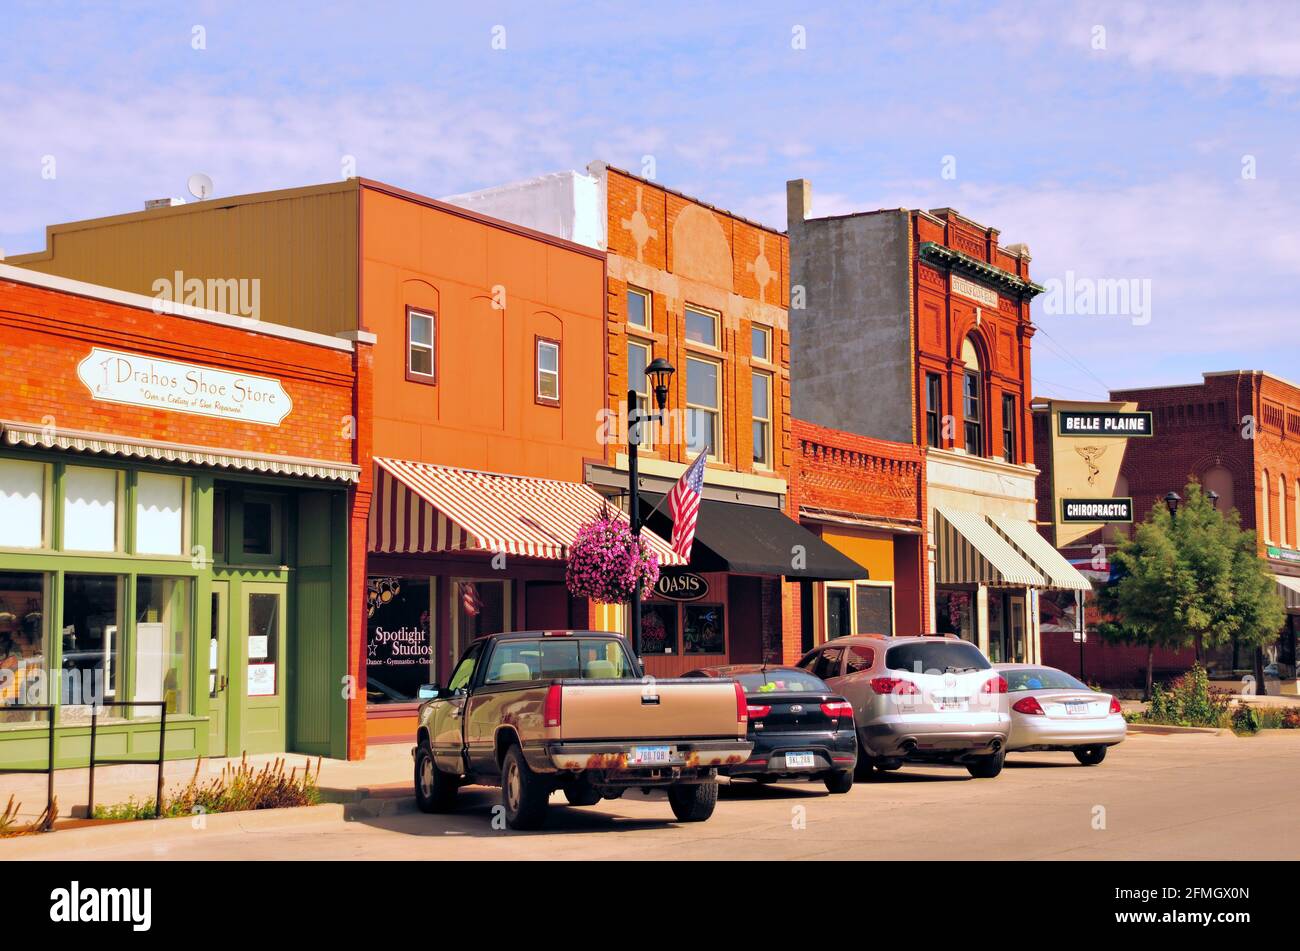 Belle Plaine, Iowa, Stati Uniti. La scena di Main Street e' tipica dell'architettura e dell'atmosfera di una piccola cittadina nel Midwest degli Stati Uniti. Foto Stock